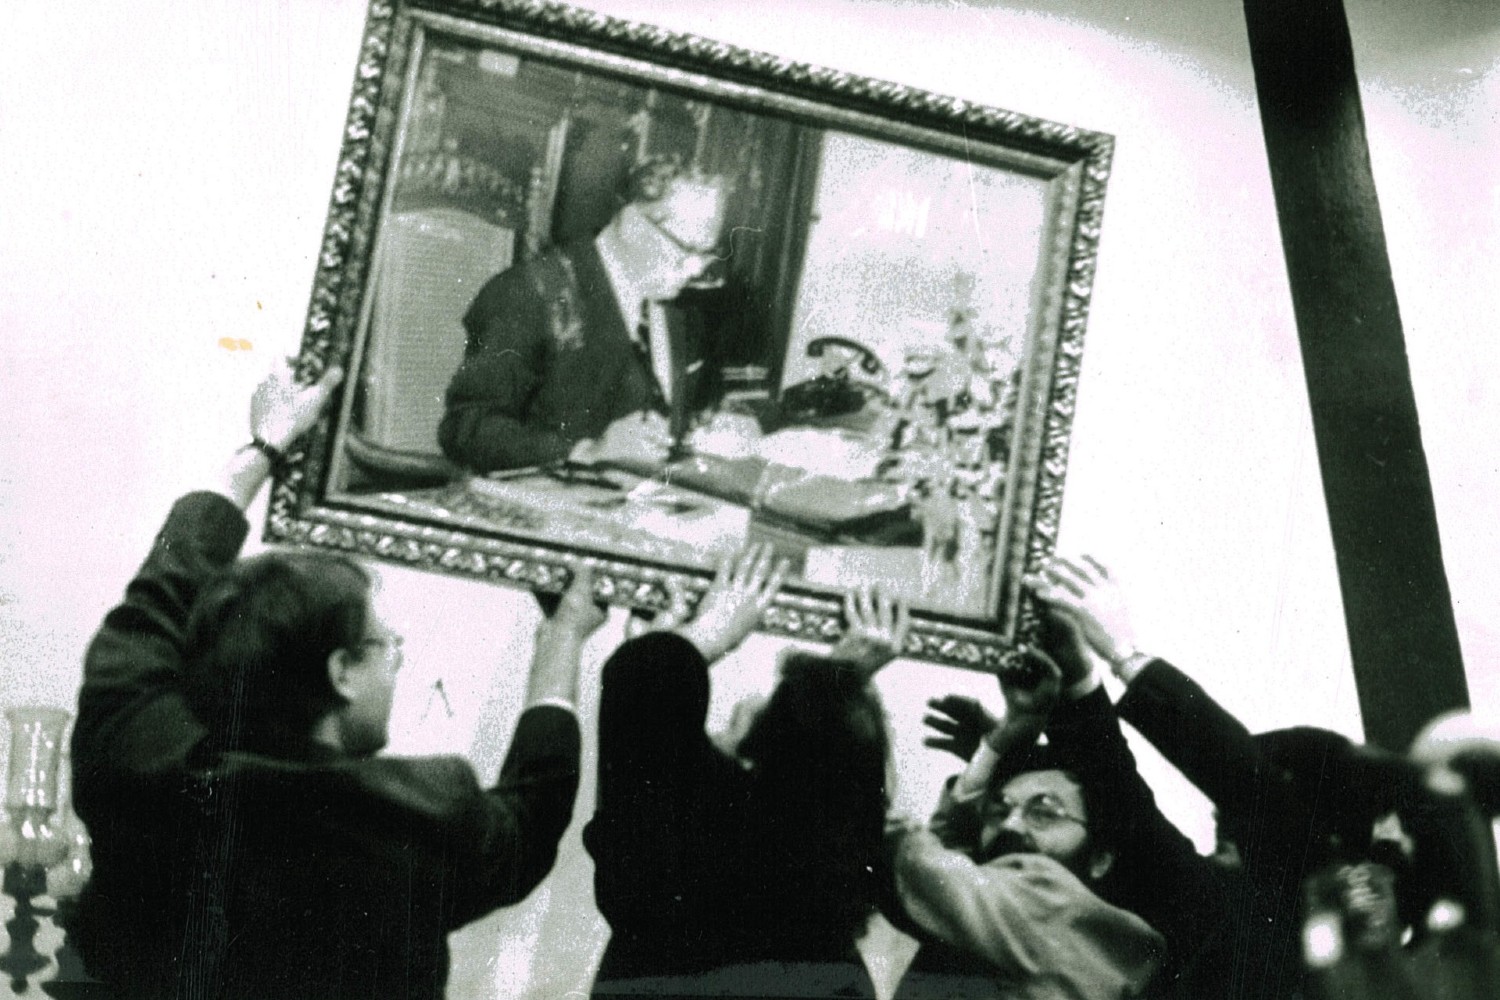 Војислав Шешељ (слева) и Вук Драшковић (у средини) скидају Титову слику у Дому инжењера и техничара у Београду 15. марта 1990. (Фото: Wikimedia/MK GRAF, CC BY-SA 3.0) 